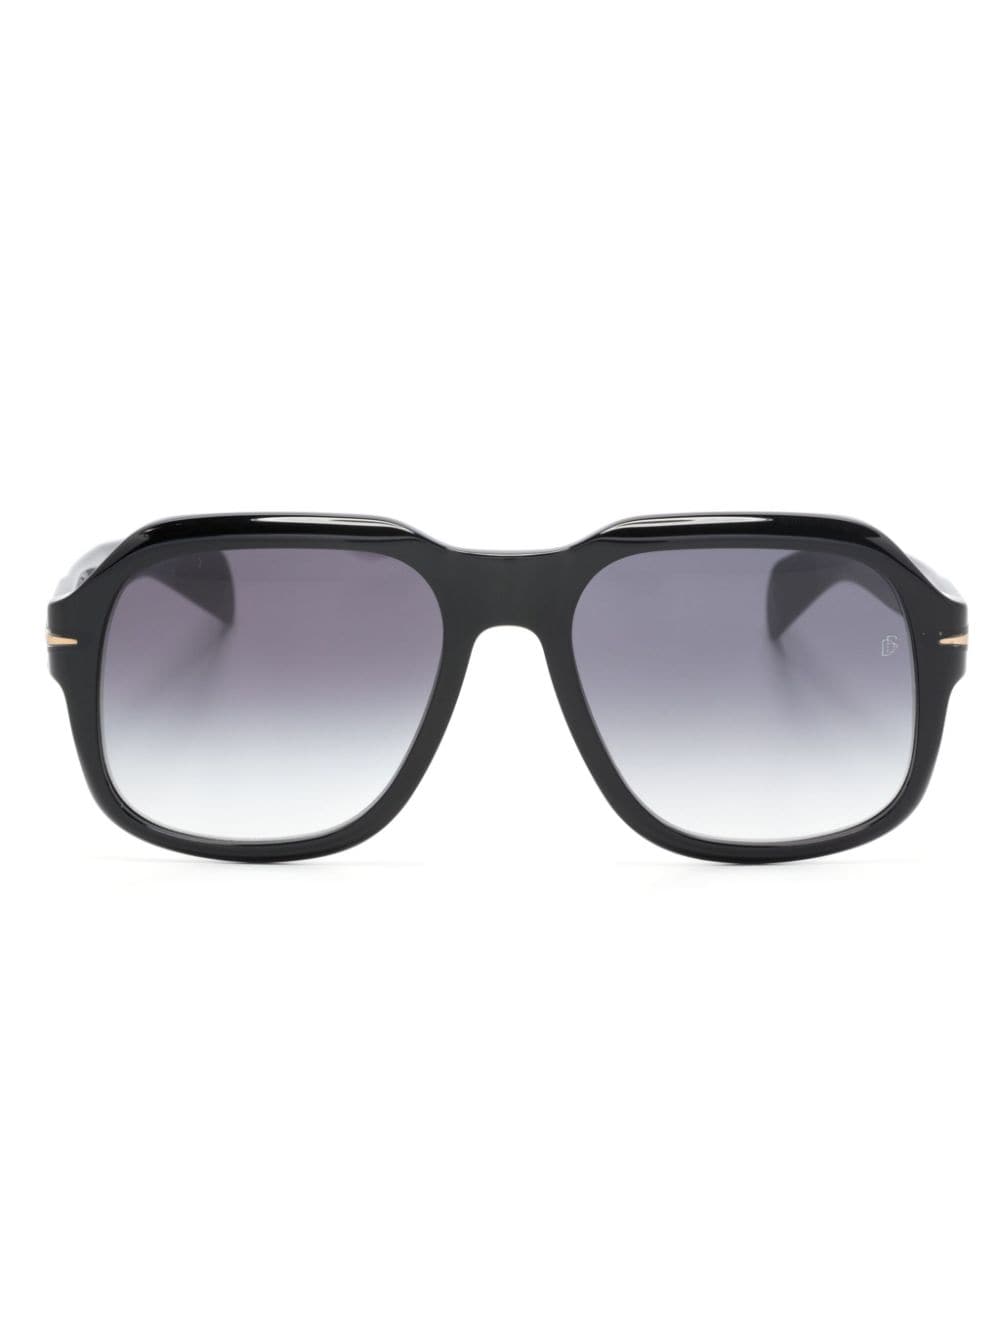 Eyewear by David Beckham 7090/S square-frame sunglasses - Black von Eyewear by David Beckham